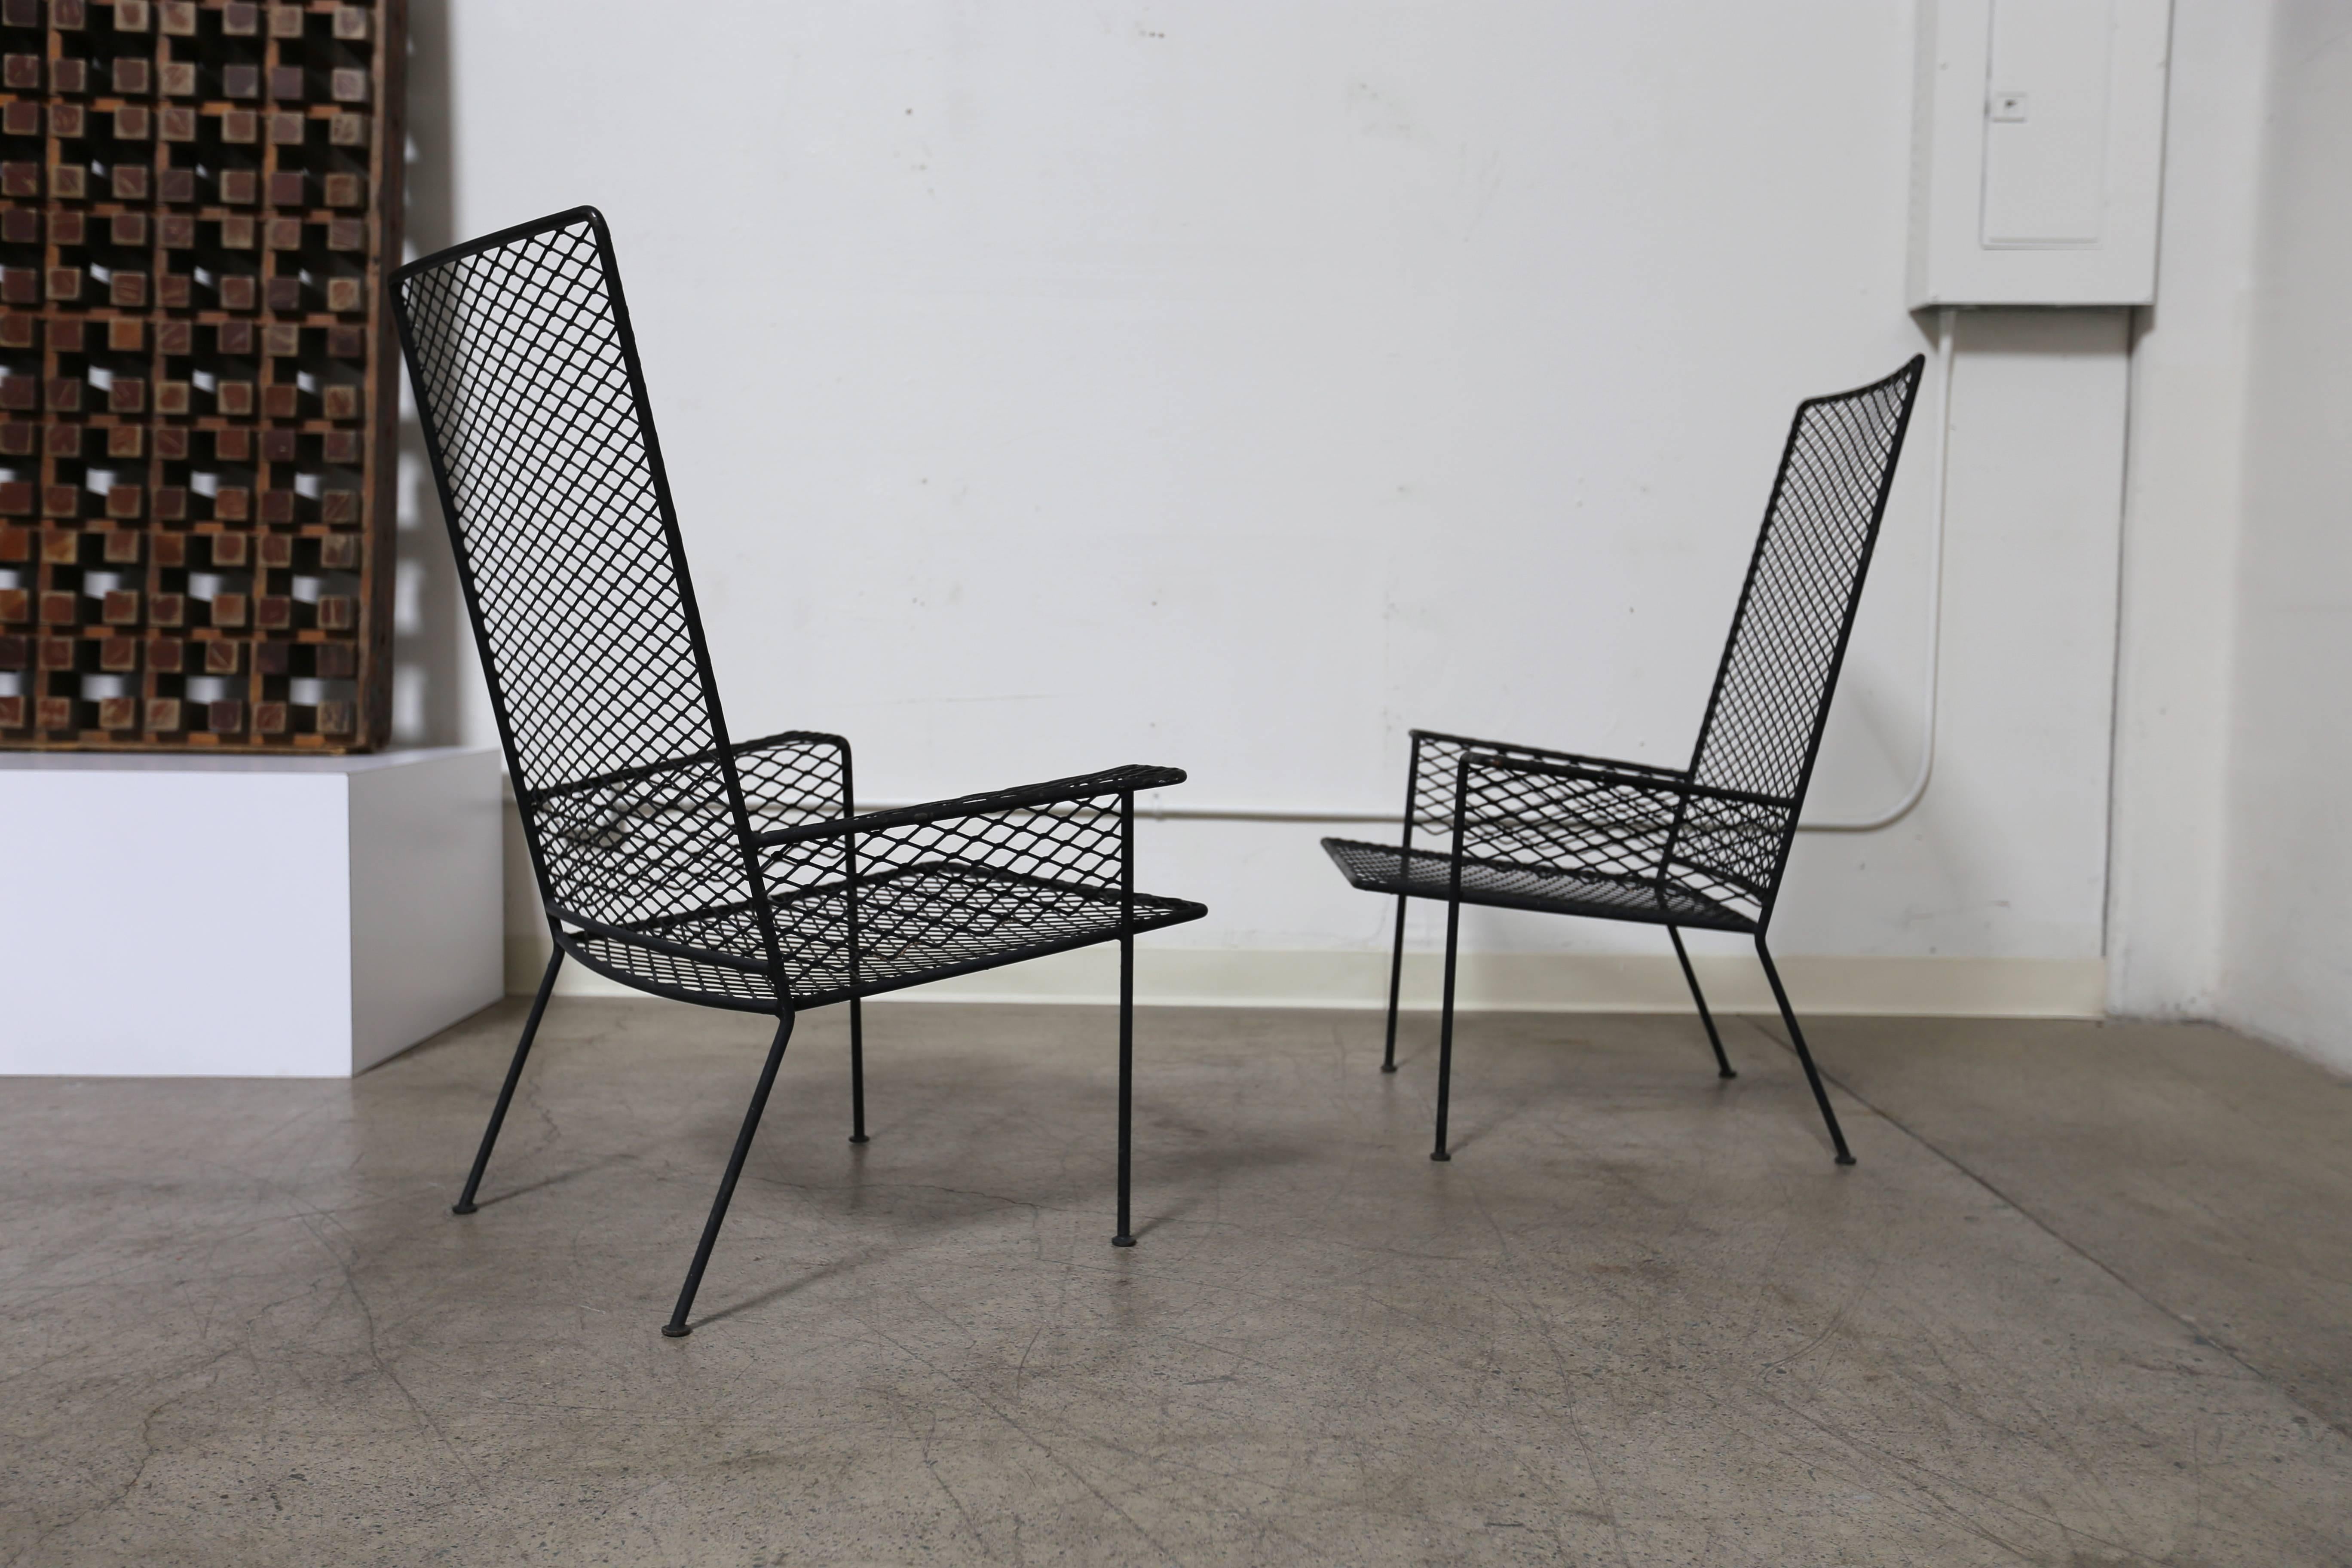 Pair of expanded metal chairs by Hendrik Van Keppel & Taylor Green. (VKG).